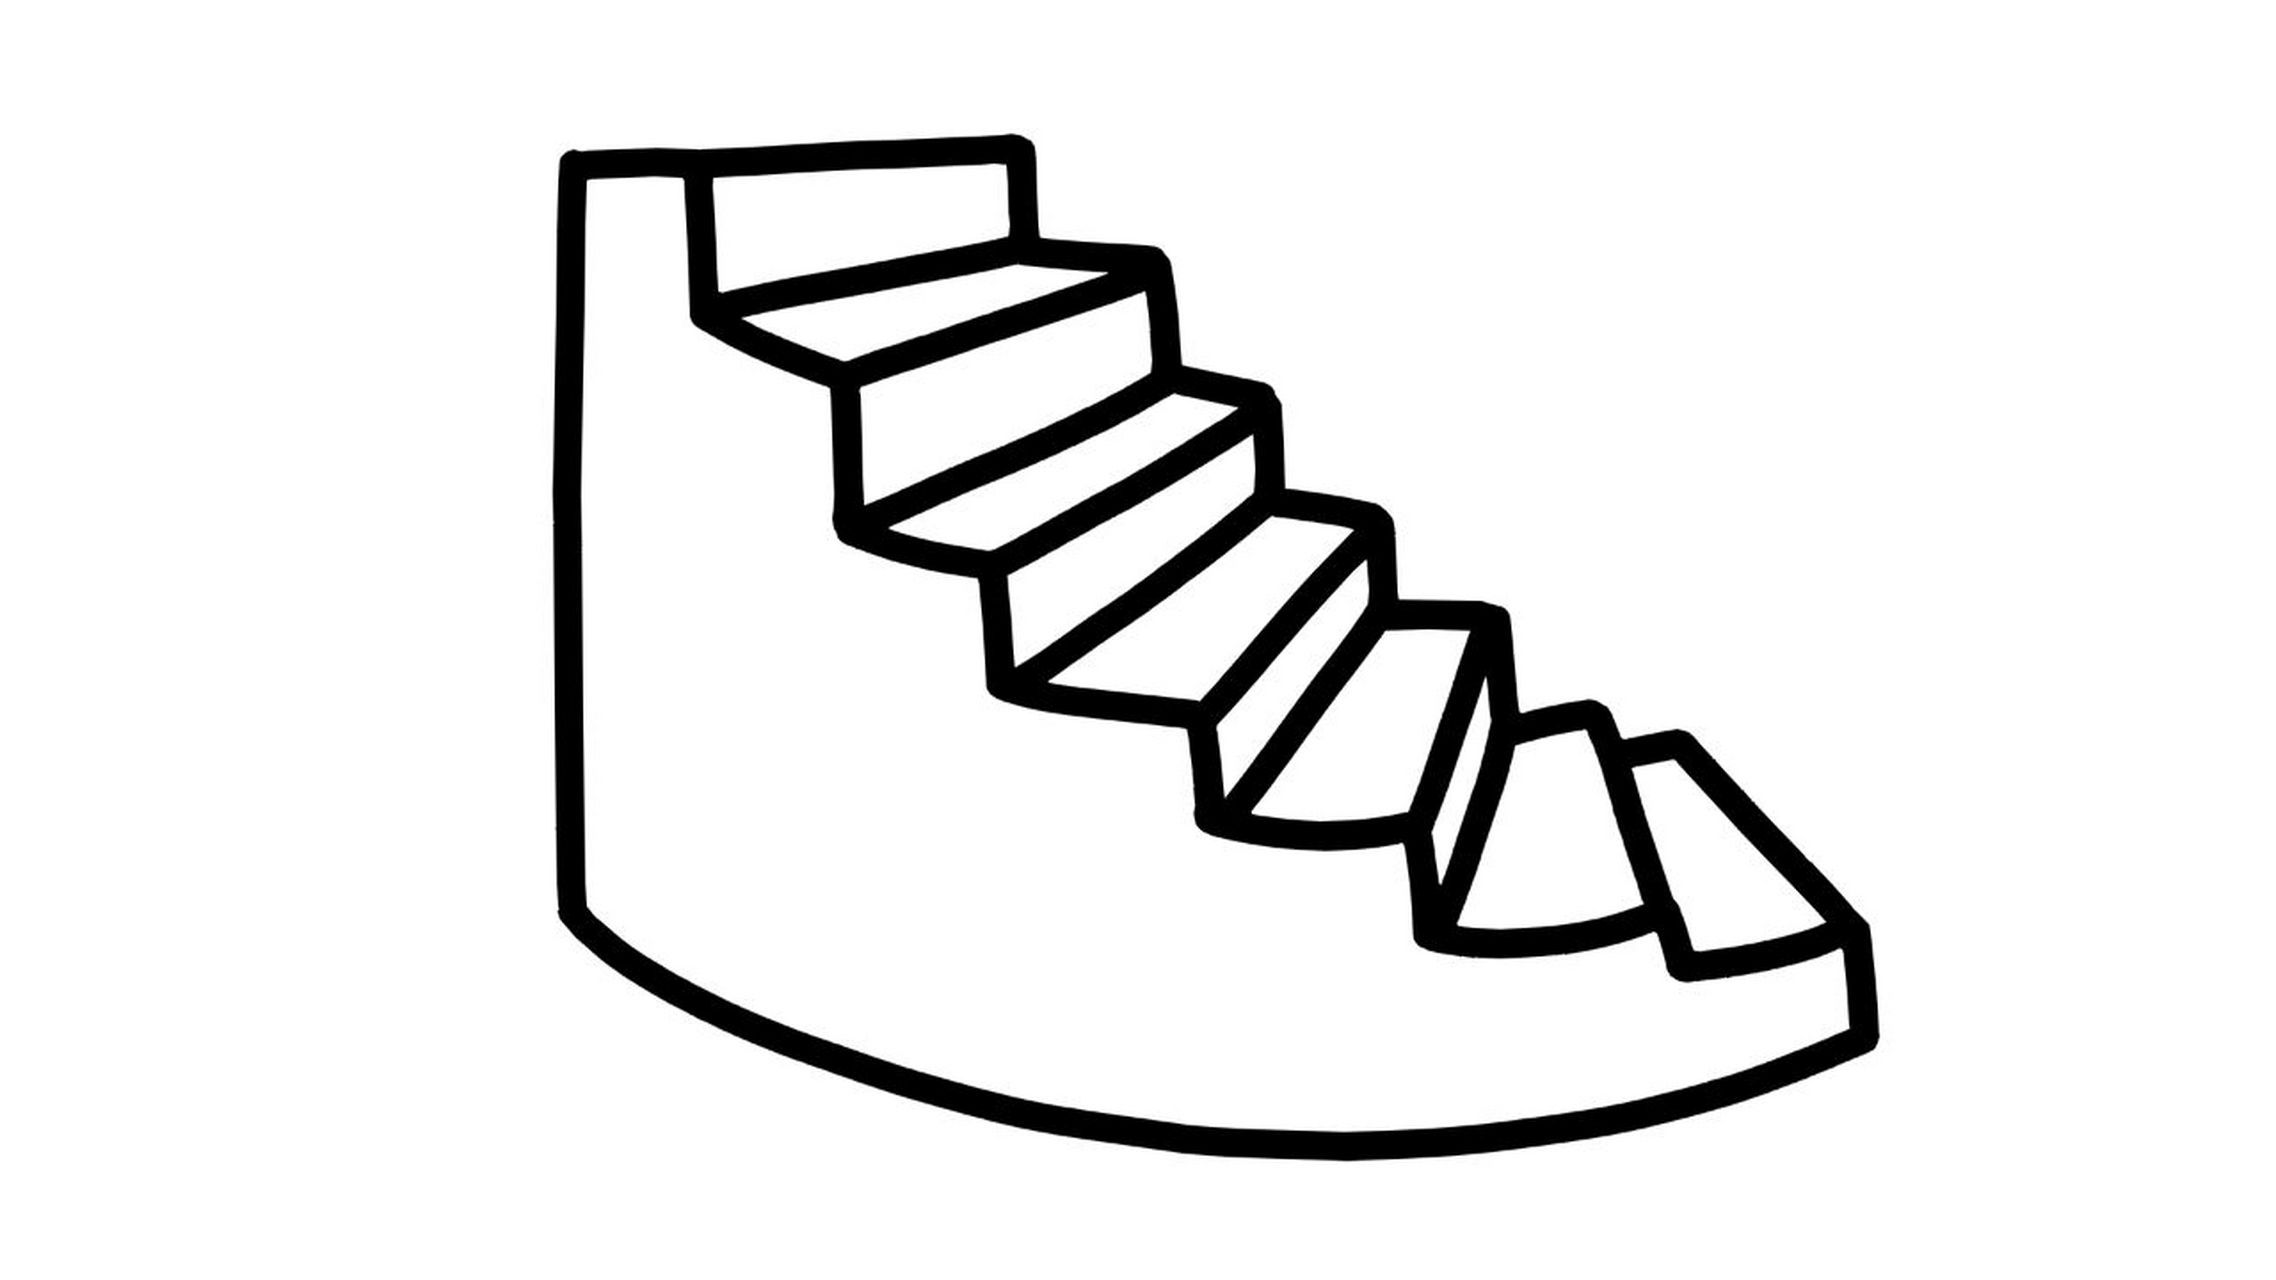 【简笔画素材分享36】4款不同造型的楼梯 分享4款卡通小楼梯02 高清